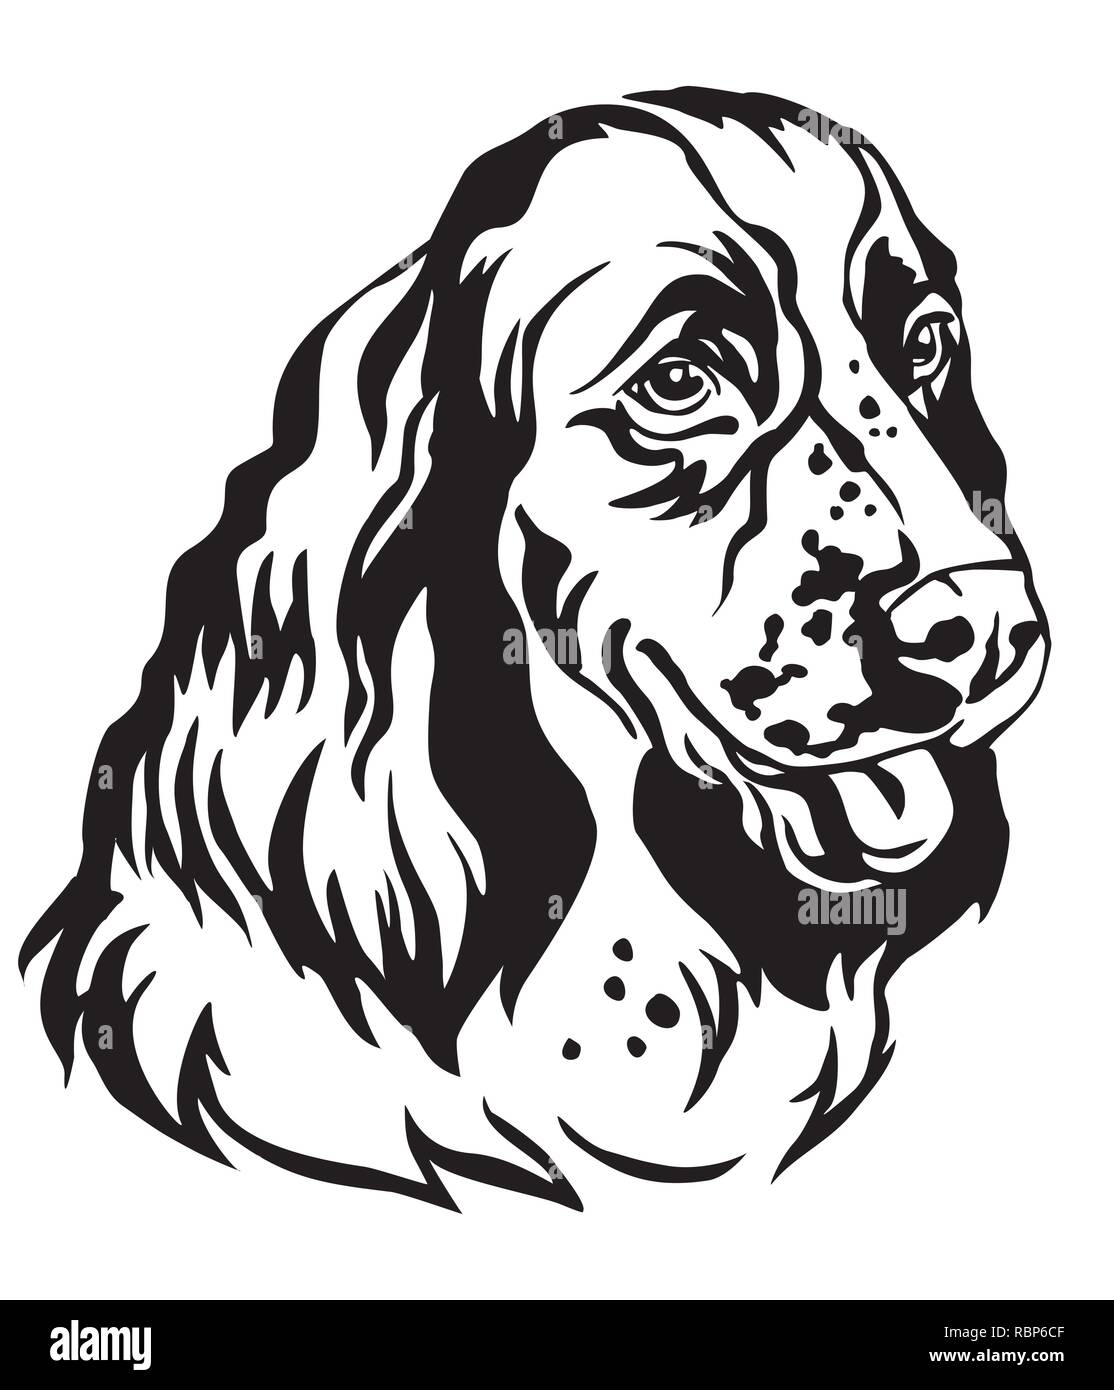 Ritratto decorativo di cane English Springer Spaniel, vettore isolato illustrazione in colore nero su sfondo bianco. Immagine per design e tatuaggio. Illustrazione Vettoriale